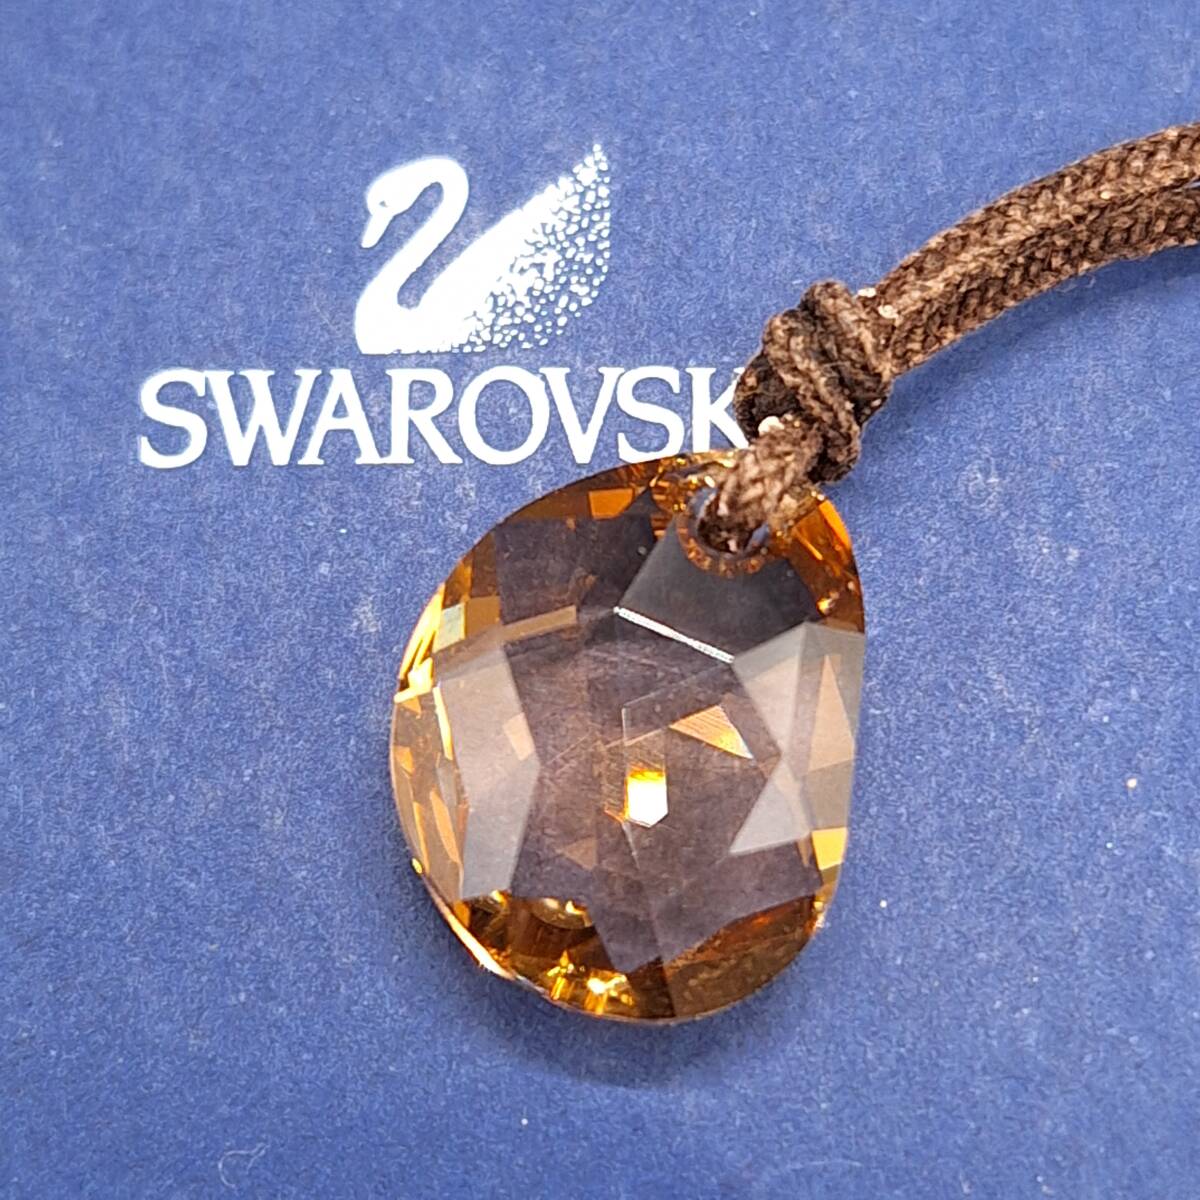 SWAROVSKI スワロフスキー チョーカー ネックレス ブラウン ペンダント クリスタルガラス 【4236】の画像2